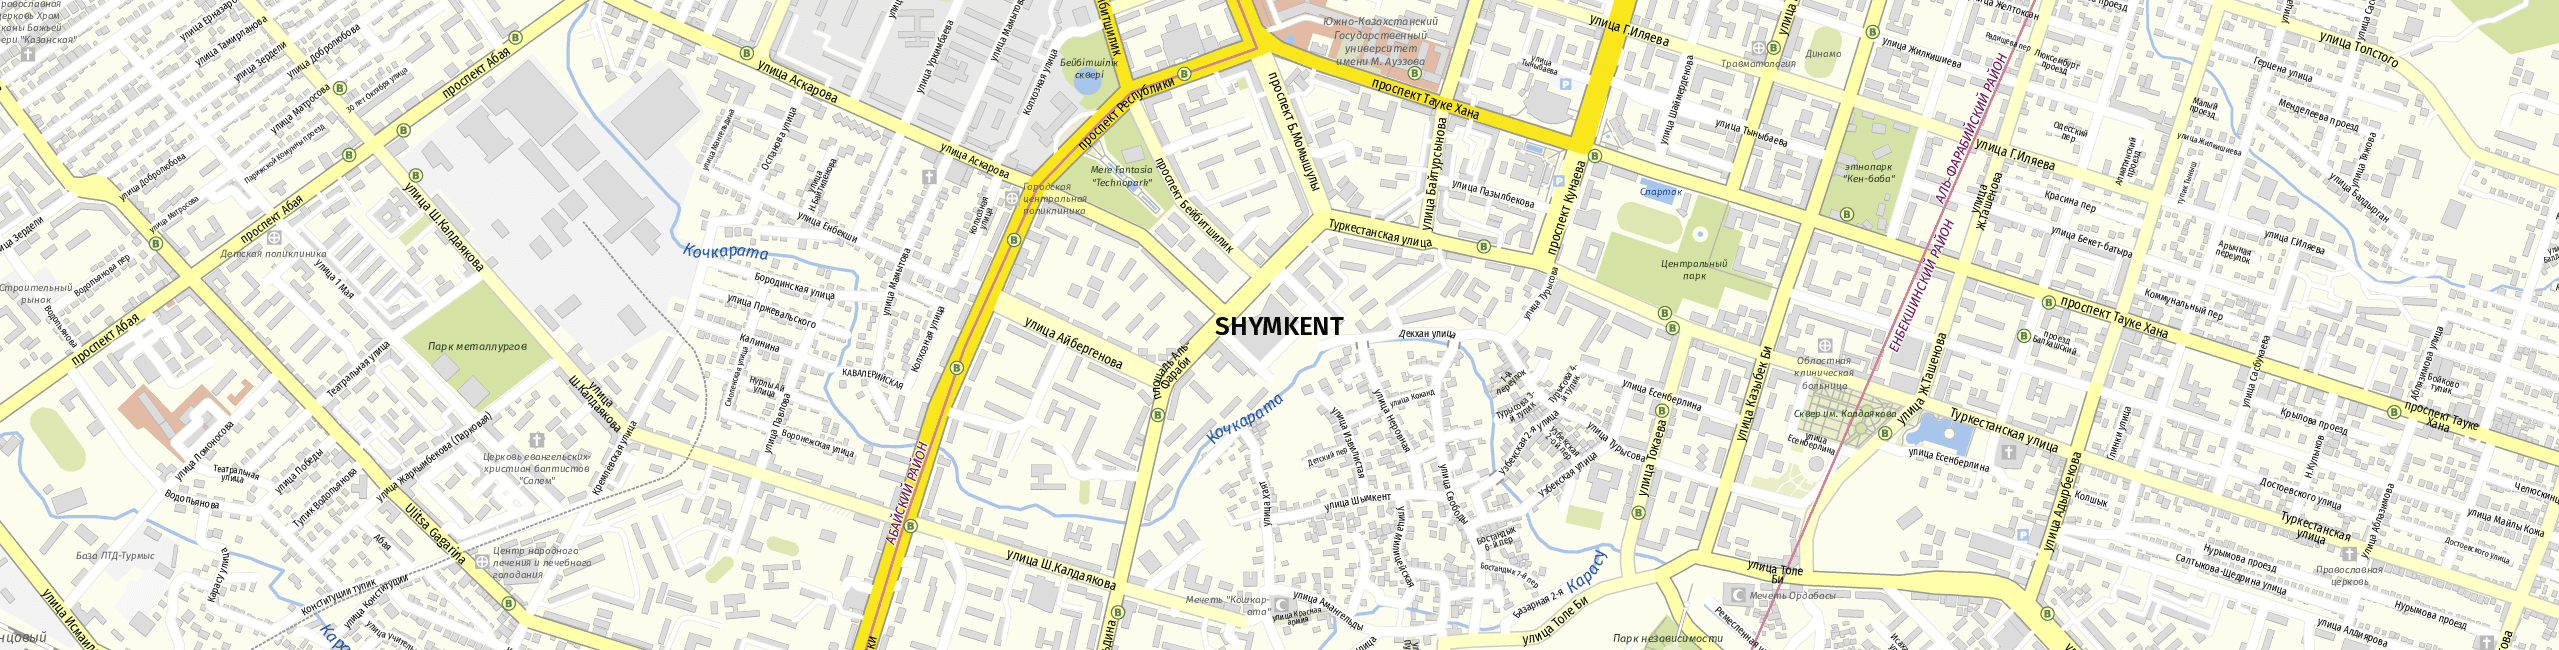 Stadtplan Shymkent zum Downloaden.